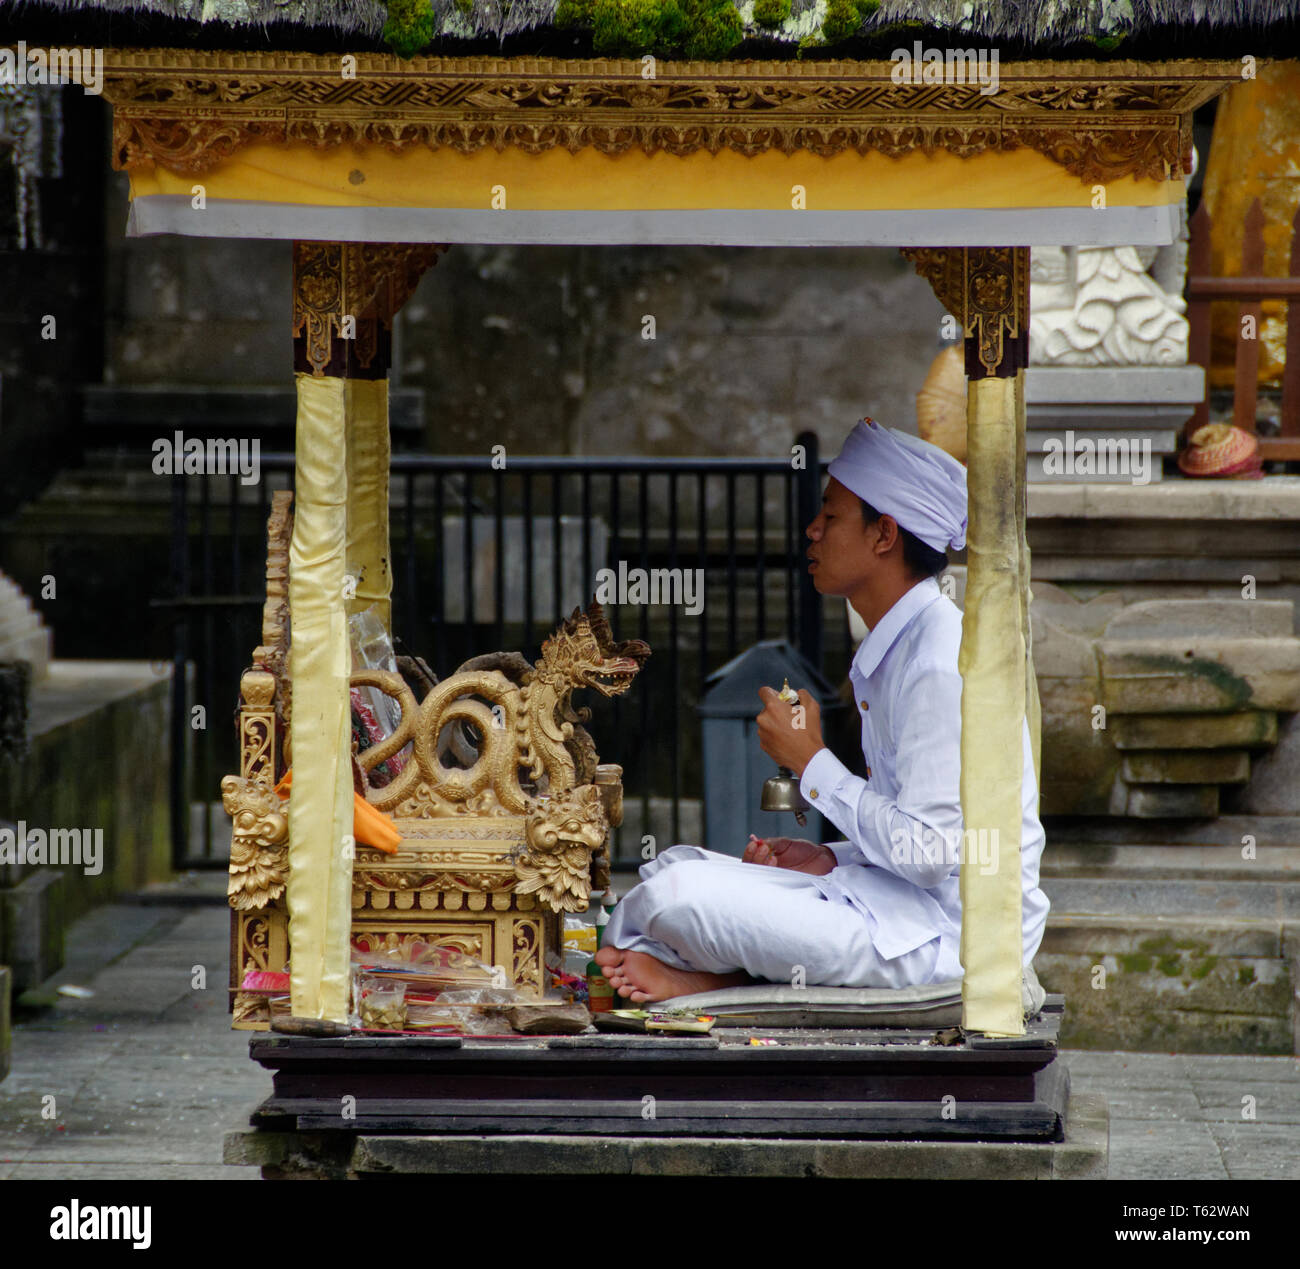 Chef de prière dans une petite cabine, Pura temple Tirta Empul, Ubud, Indonésie Banque D'Images